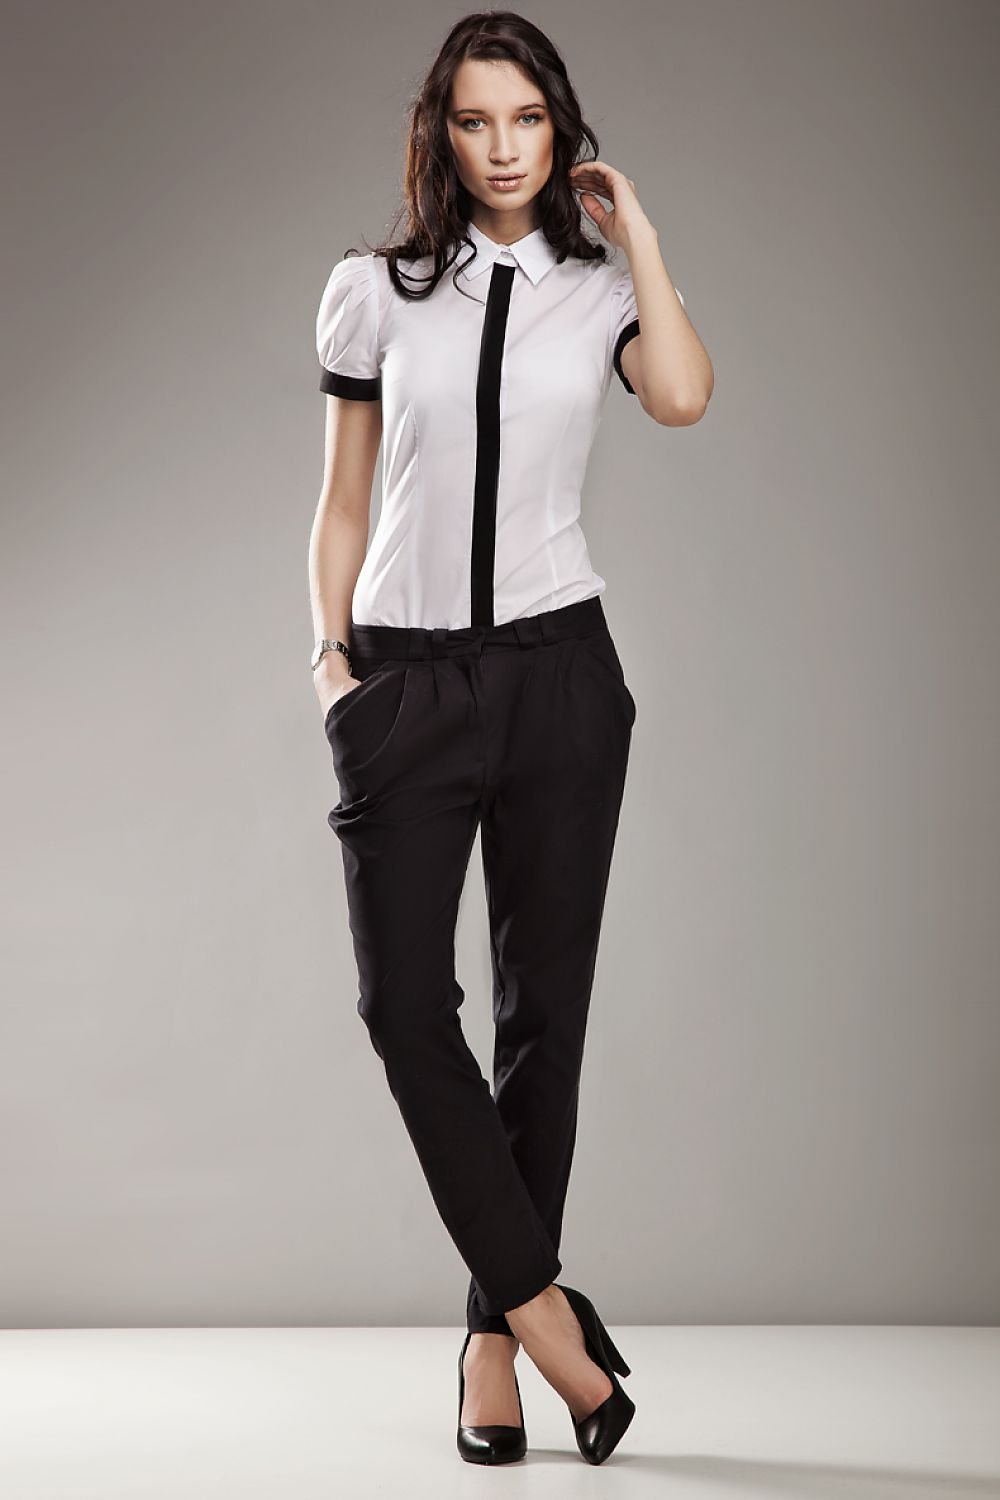 Черные брюки белая блузка. Классическая одежда для девушек. Строгая одежда для девушек. Девушка в офисной одежде. Классический стиль одежды для девушек.